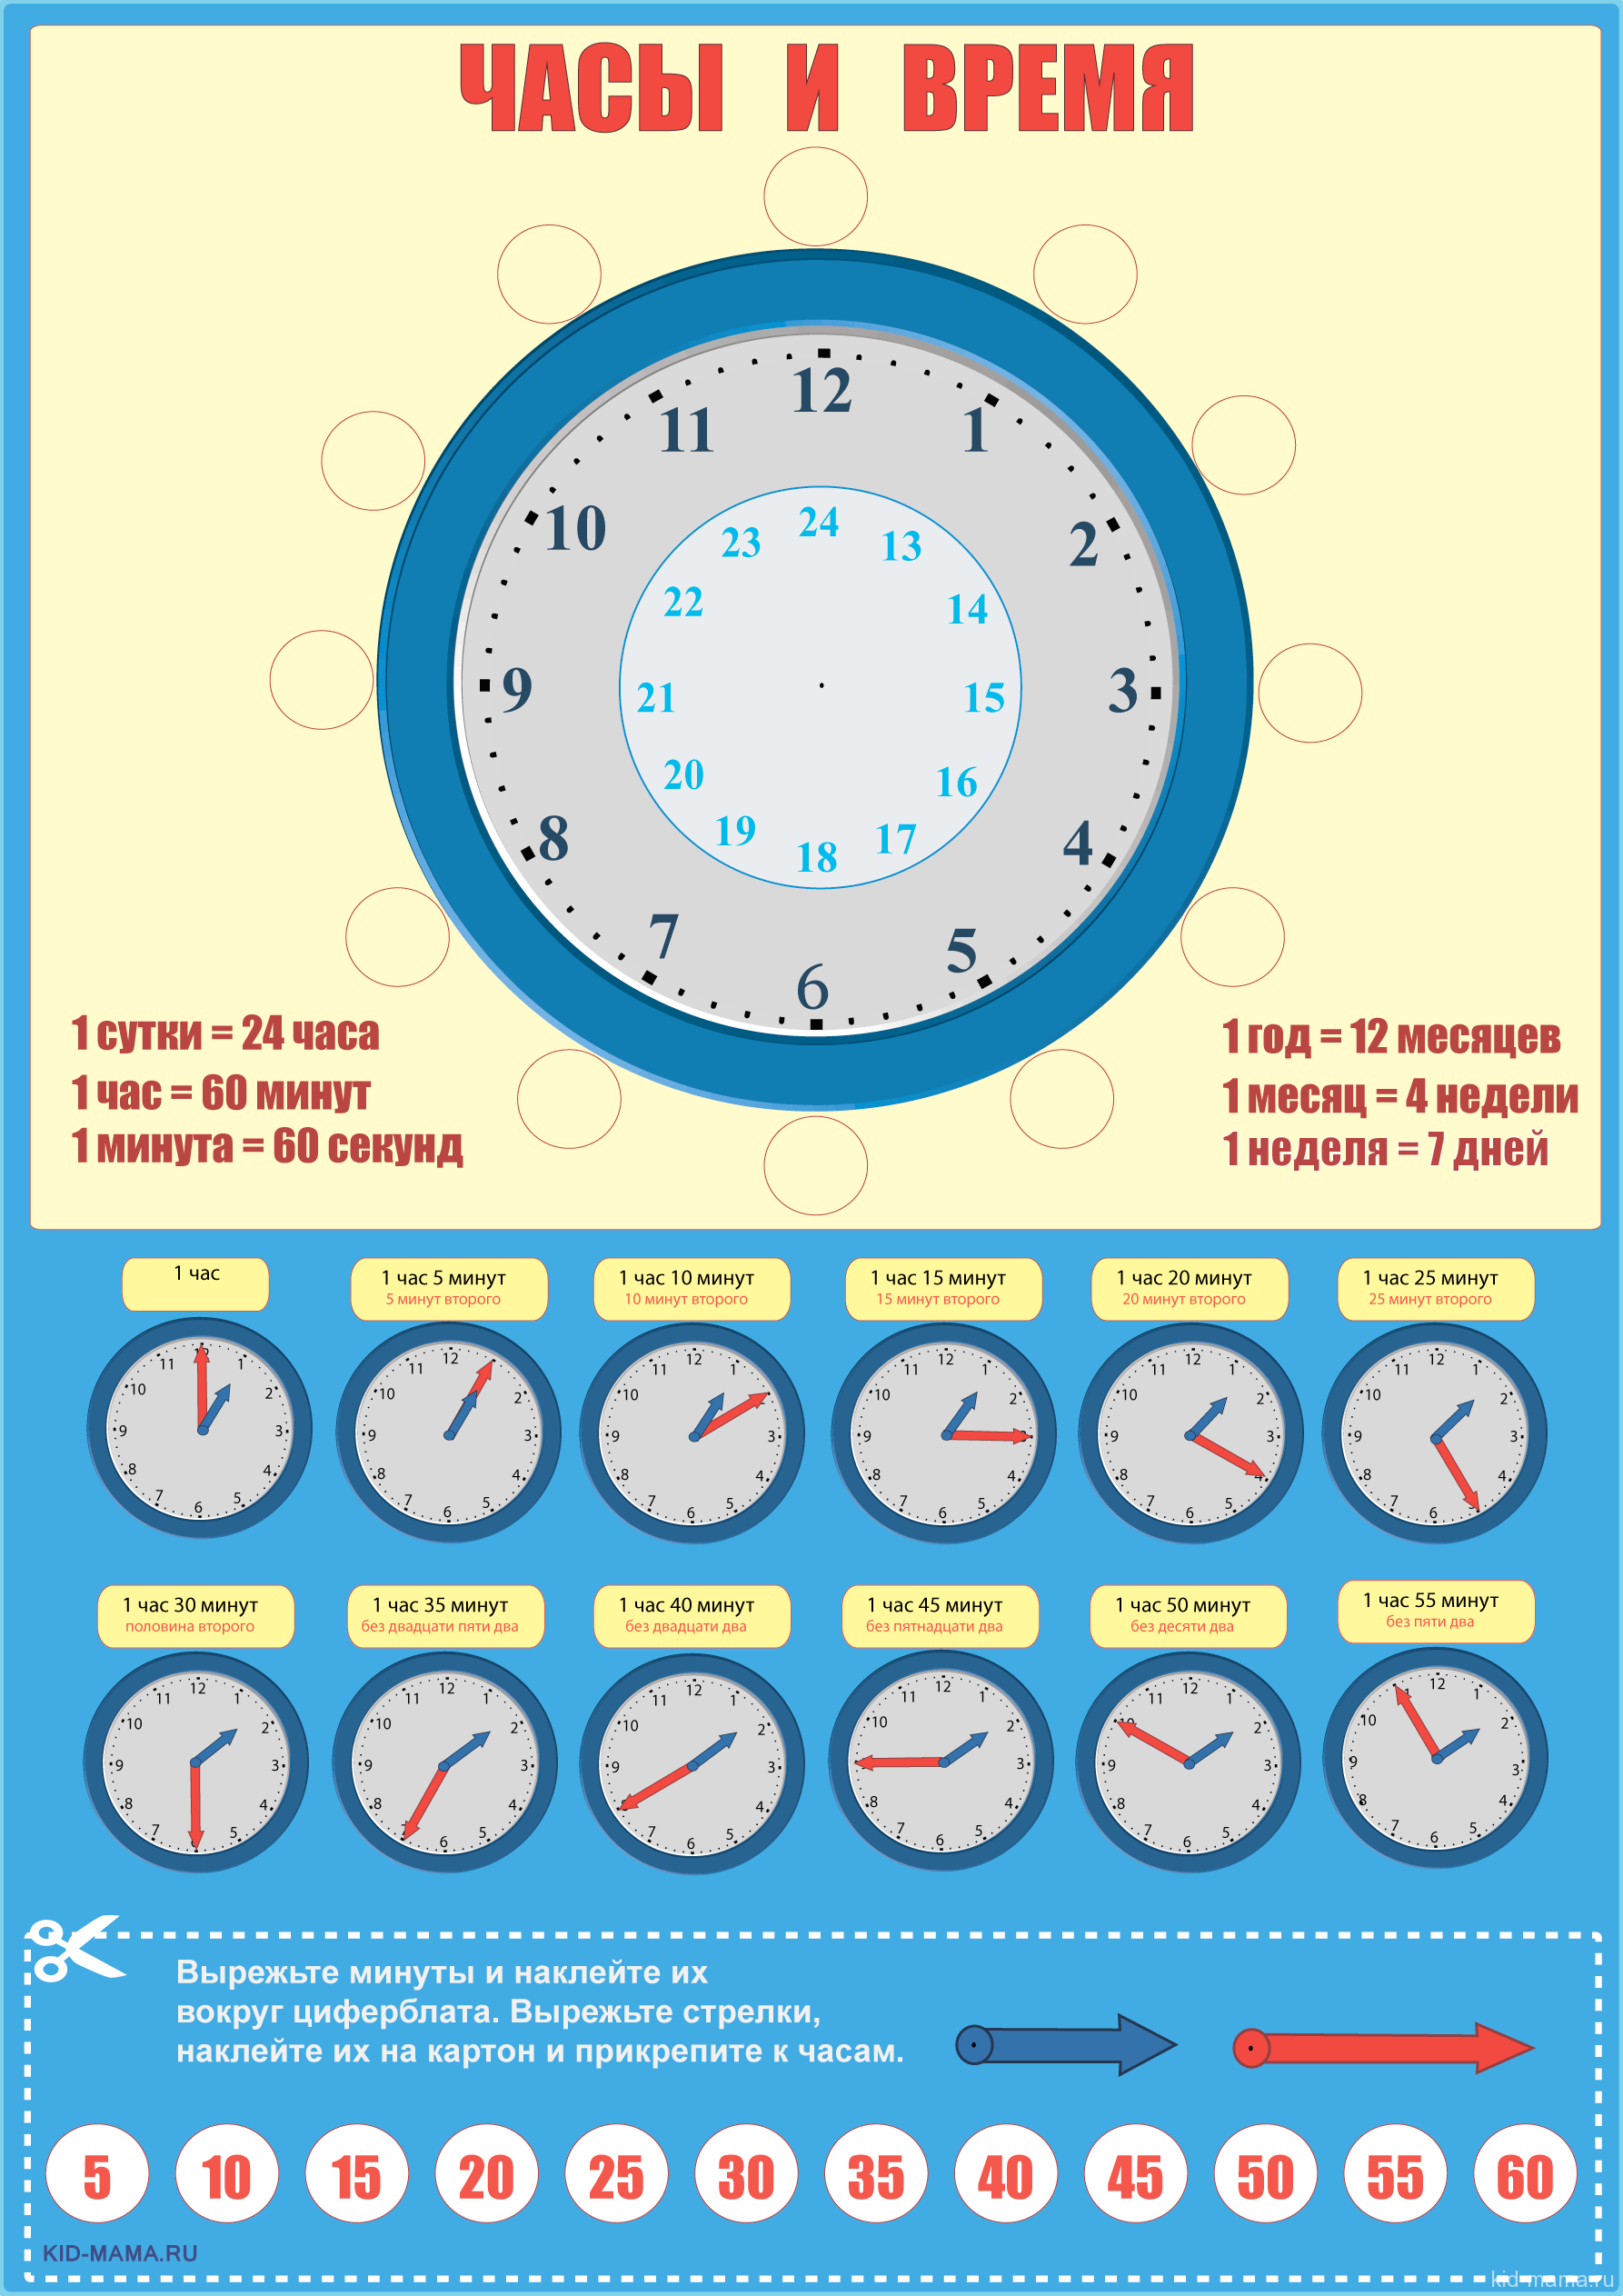 22 секунды в часы. Как научить ребёнка распознавать время на часах. Как научиться ребенка времени по часам. Как научить ребёнка понимать по часам со стрелками время.